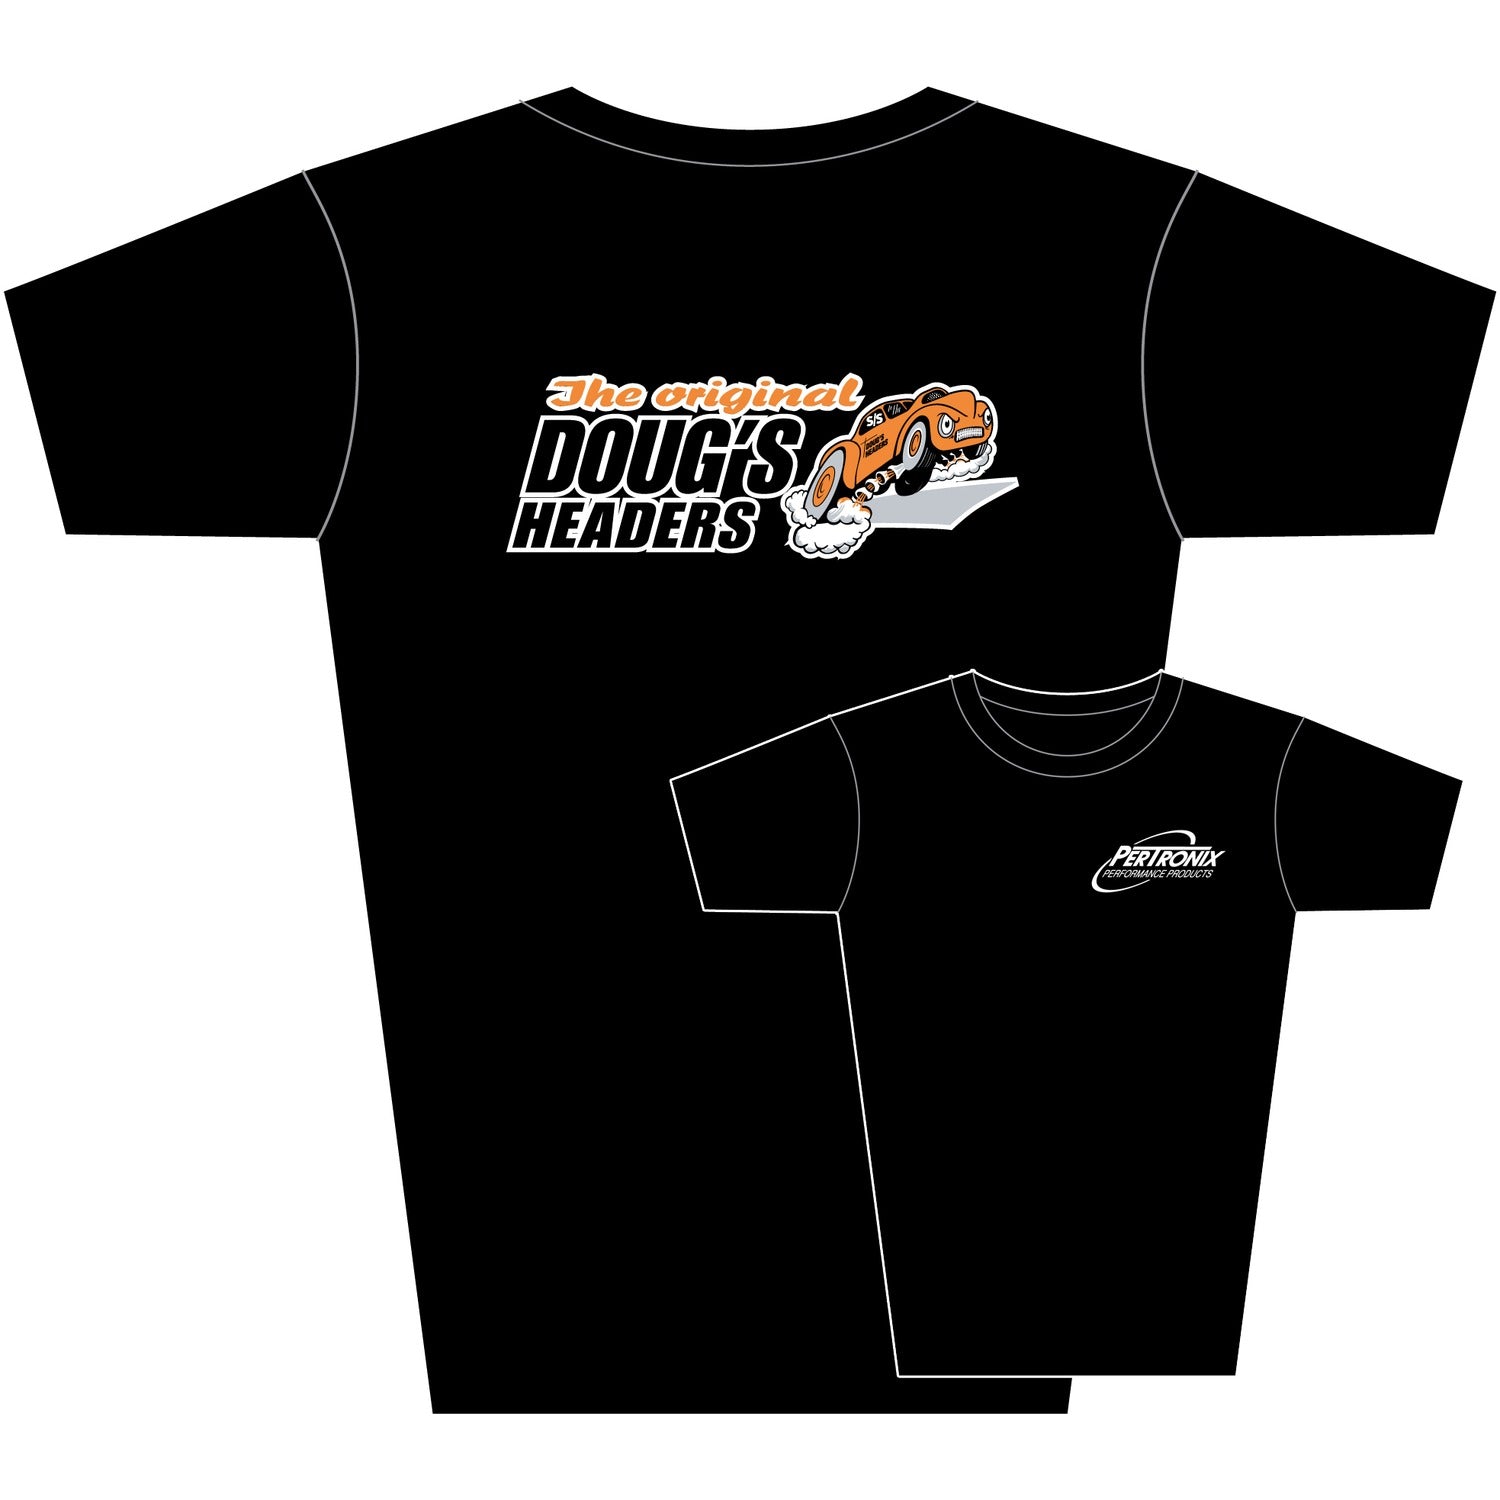 Doug's Headers T-Shirt TS204